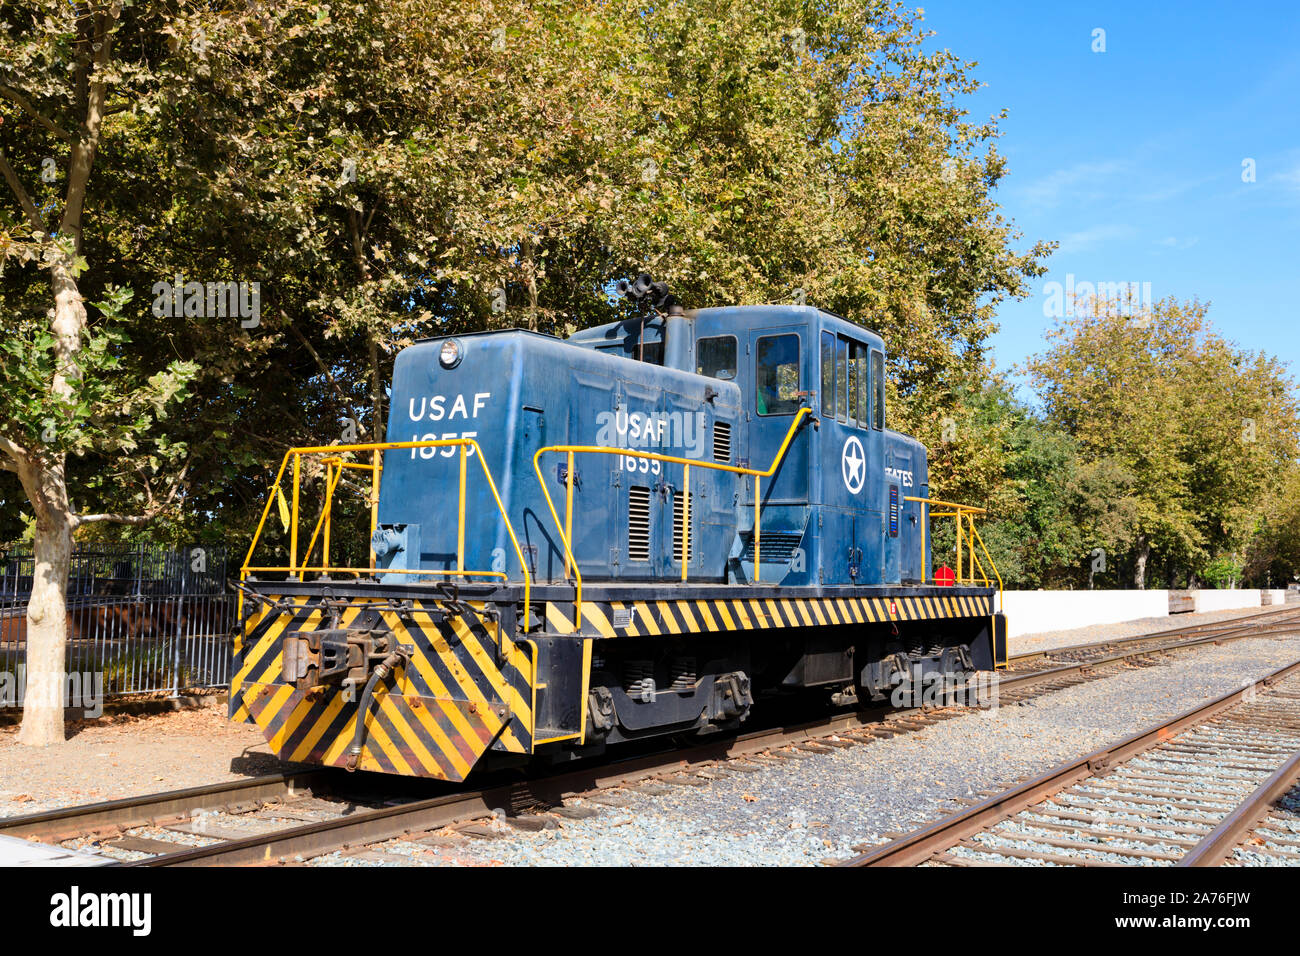 Locomotiva di utilità ex USAF 1655 presso la California State Railroad Museum, Sacramento, la capitale dello Stato della California, Stati Uniti d'America. Foto Stock